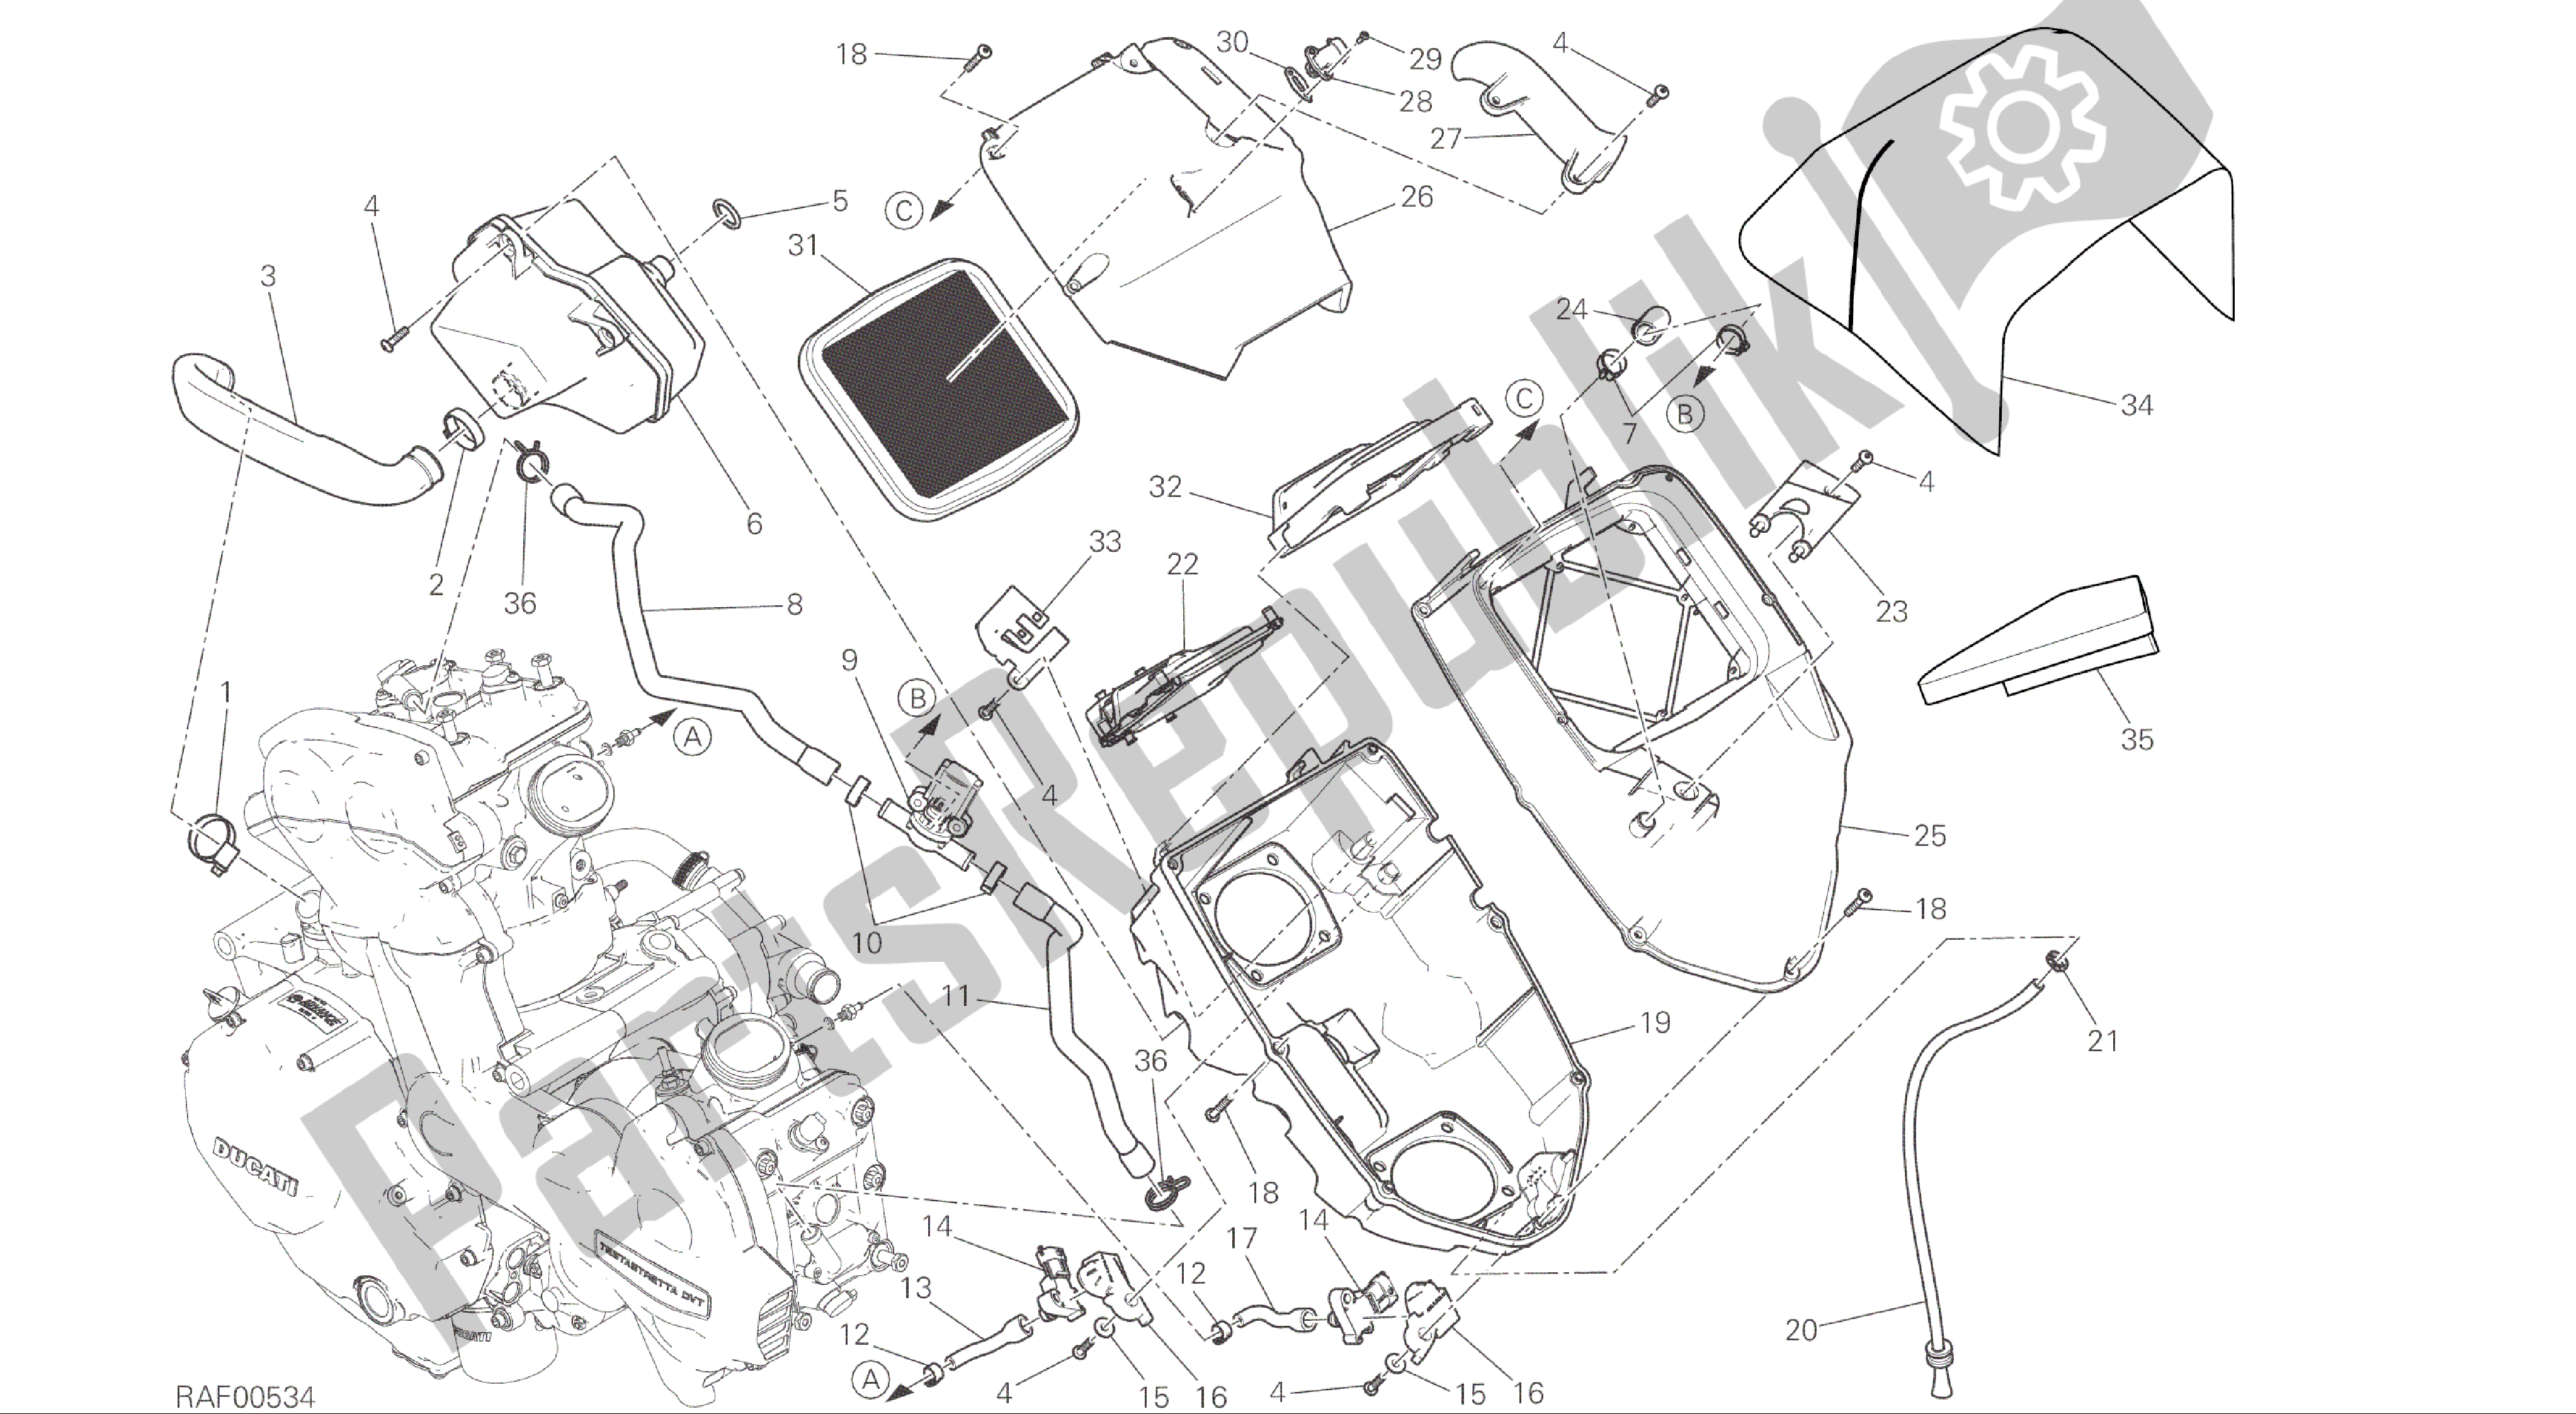 Todas as partes de Desenho 029 - Entrada [mod: Ms1200; Xst: Aus, Eur, Fra, Jap] Quadro De Grupo do Ducati Multistrada 1200 2015